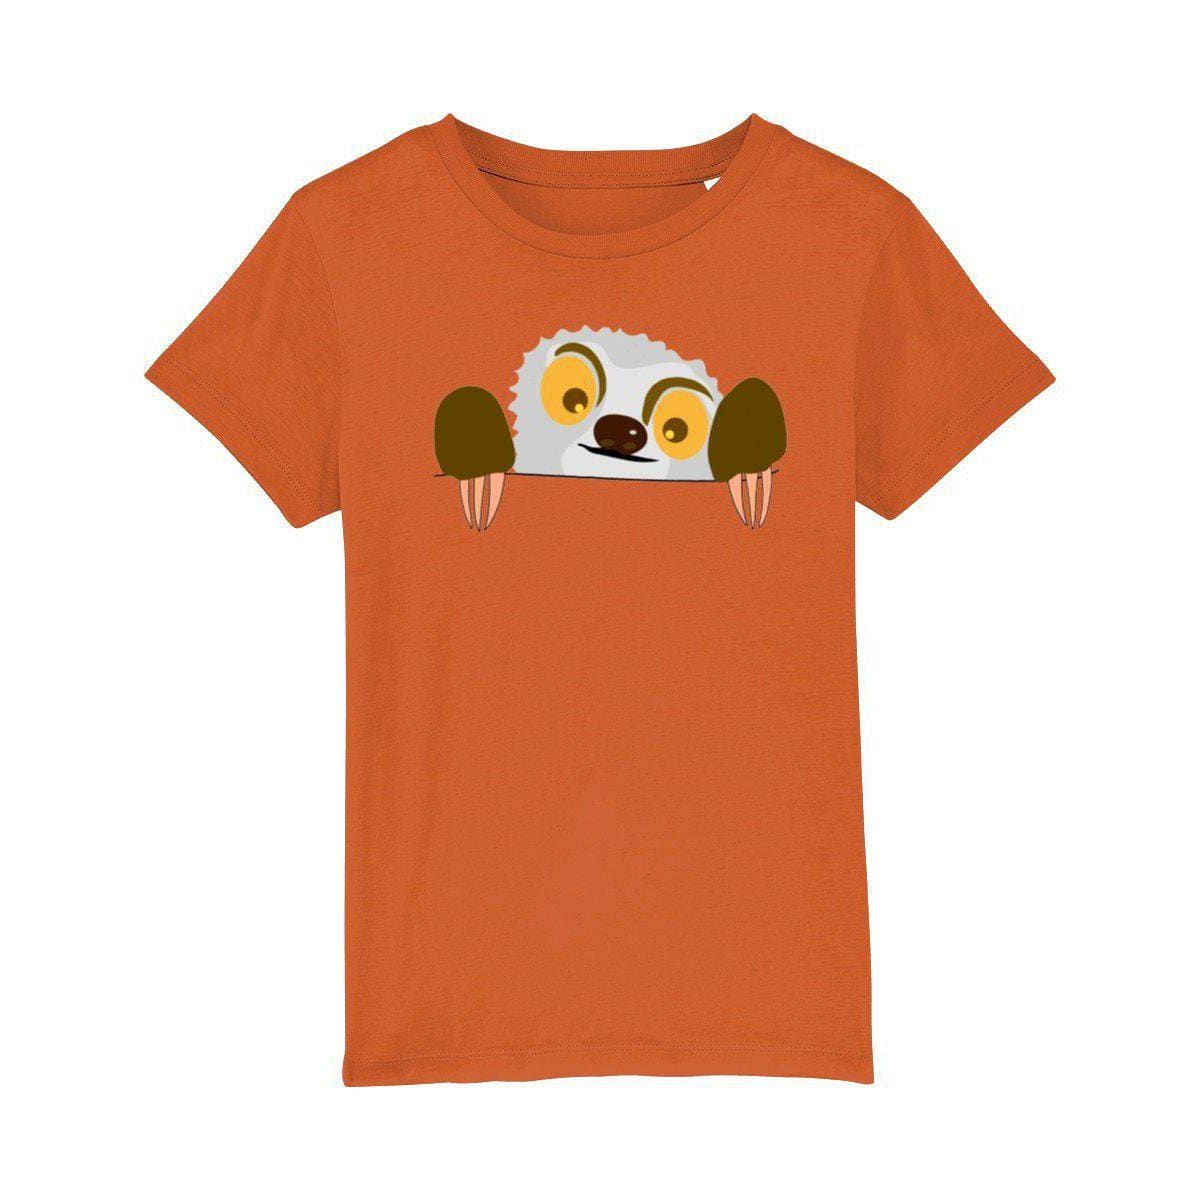 Kid's Peeking Sloth T-shirt